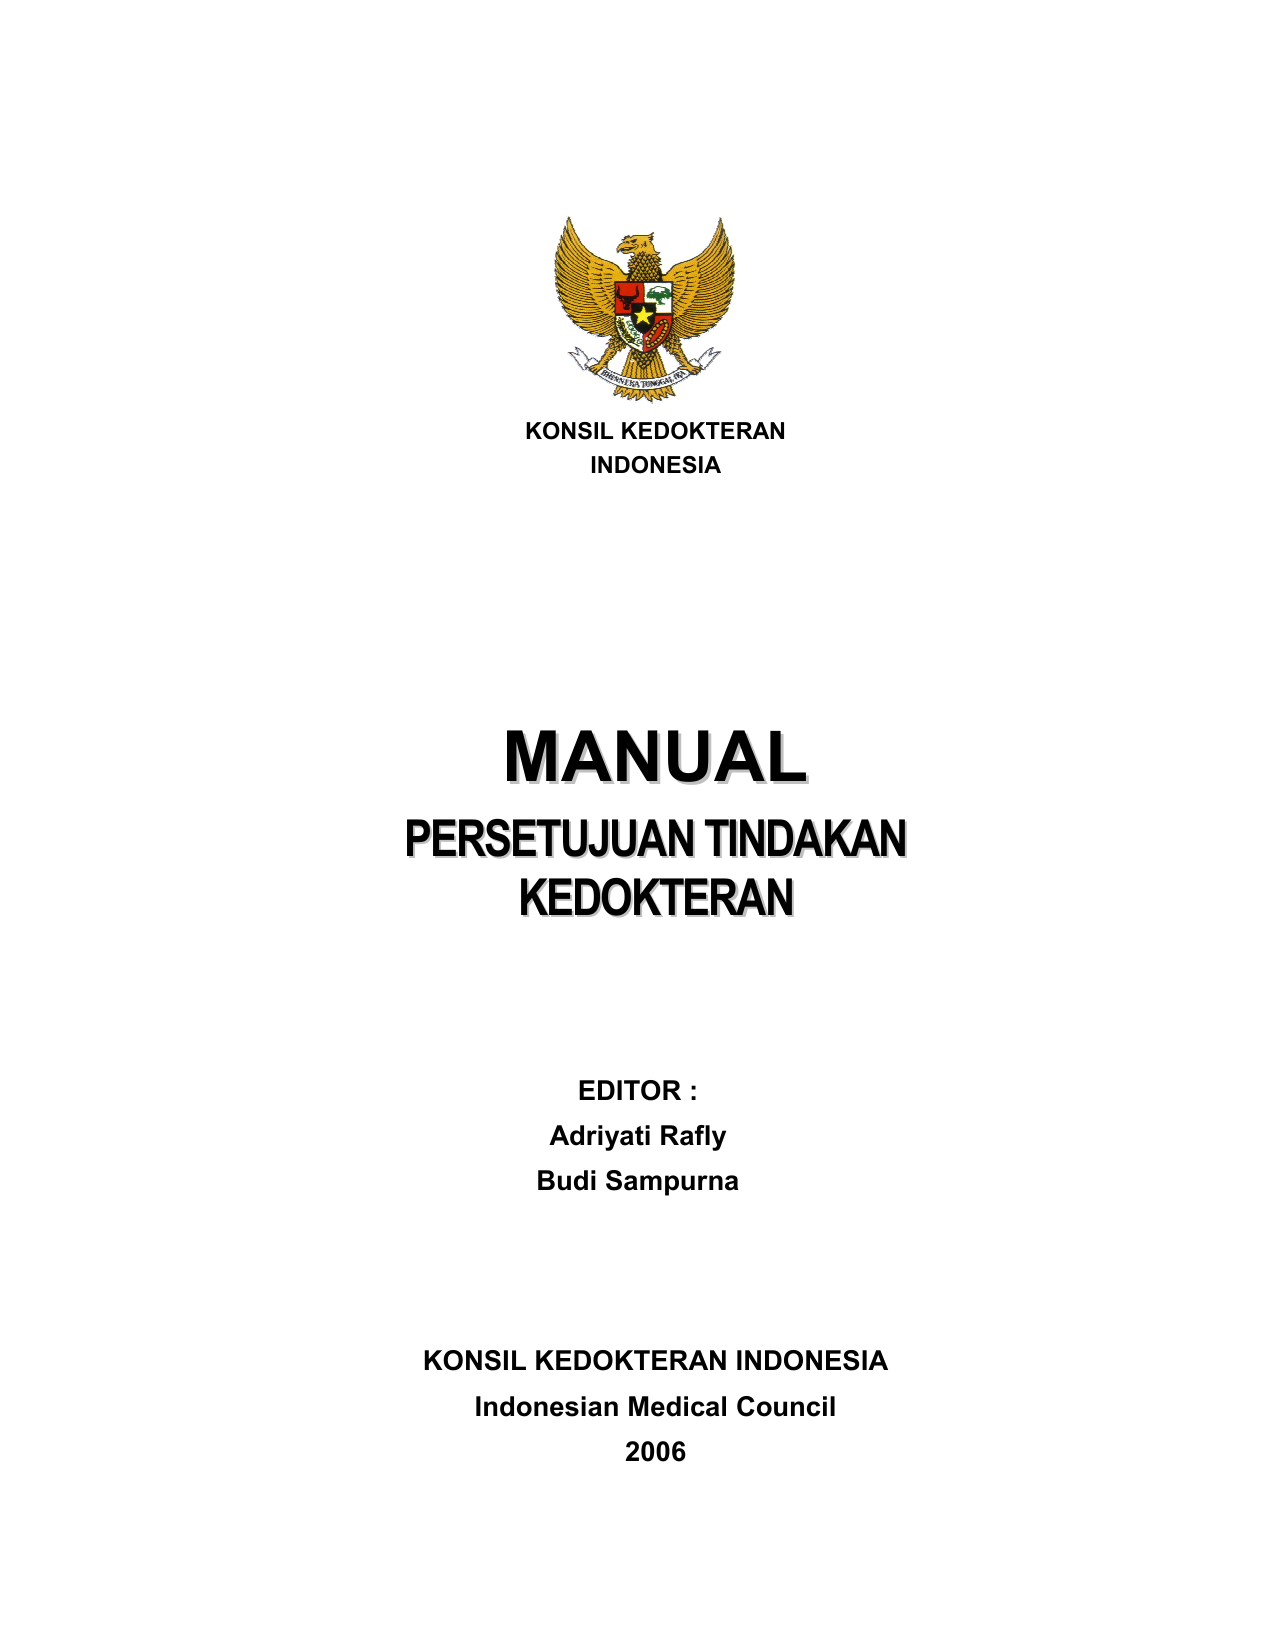 Indonesian Medical Council 2006 KONSIL KEDOKTERAN INDONESIA Edisi Pertama 2006 Cetakan Pertama Nopember 2006 Perpustakaan Nasional Katalog Dalam